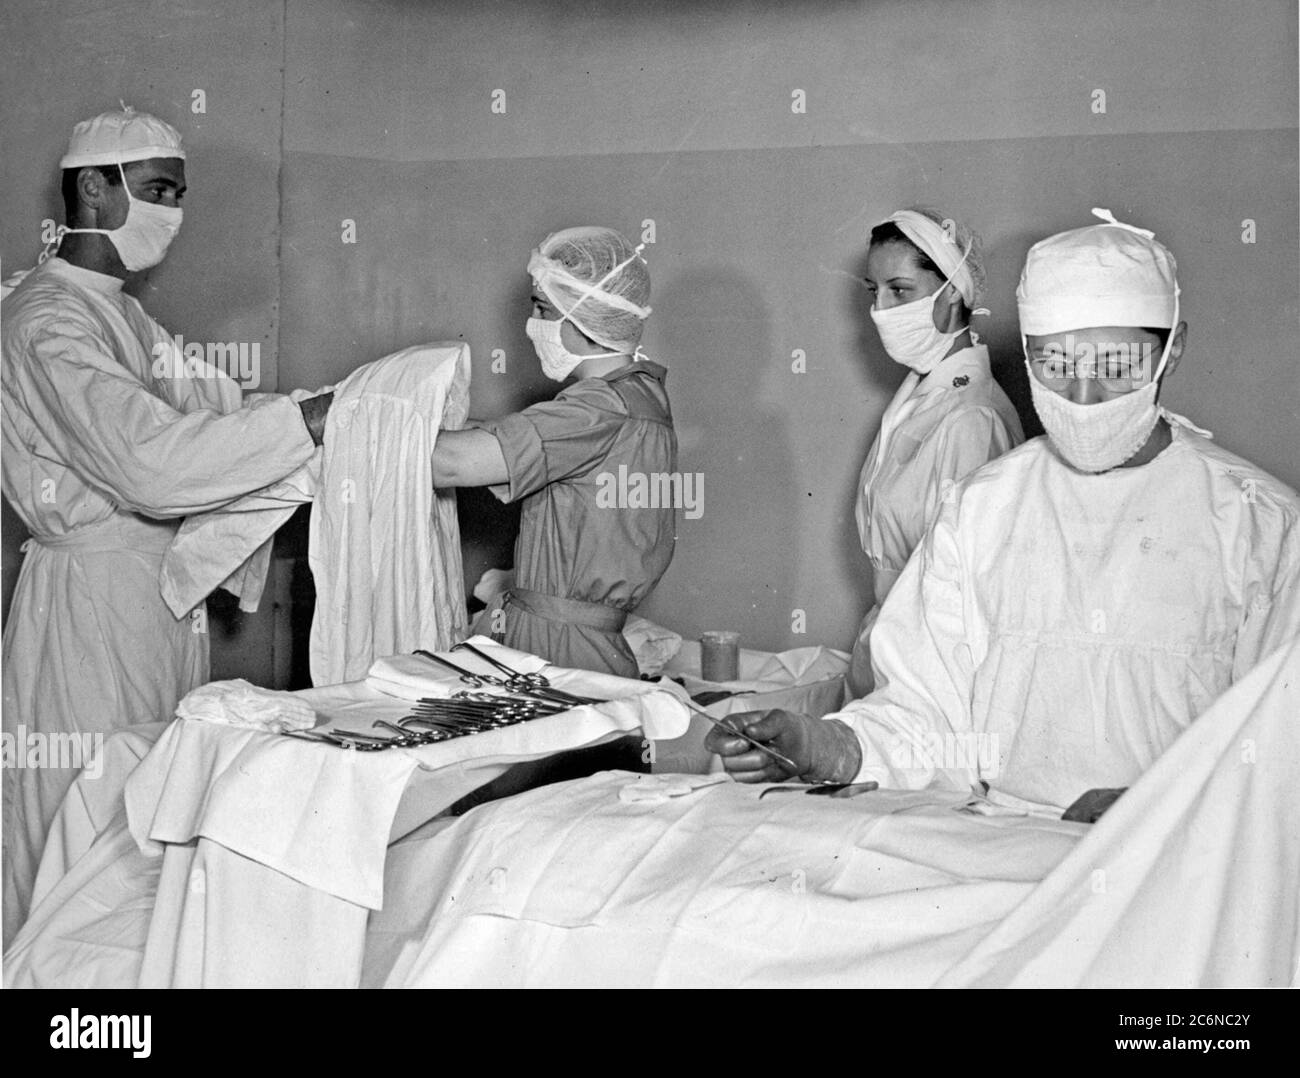 Frauen, die für den Volunteer Emergency Service (WAVES) akzeptiert werden, erhalten am 26. Juli 1943 eine Ausbildung von Krankenhauspithelfern im Naval Hospital Jacksonville. WELLEN ermöglichten Korpsmännern, während des Zweiten Weltkriegs einzusetzen (Offizielles Foto der U.S. Navy). Stockfoto